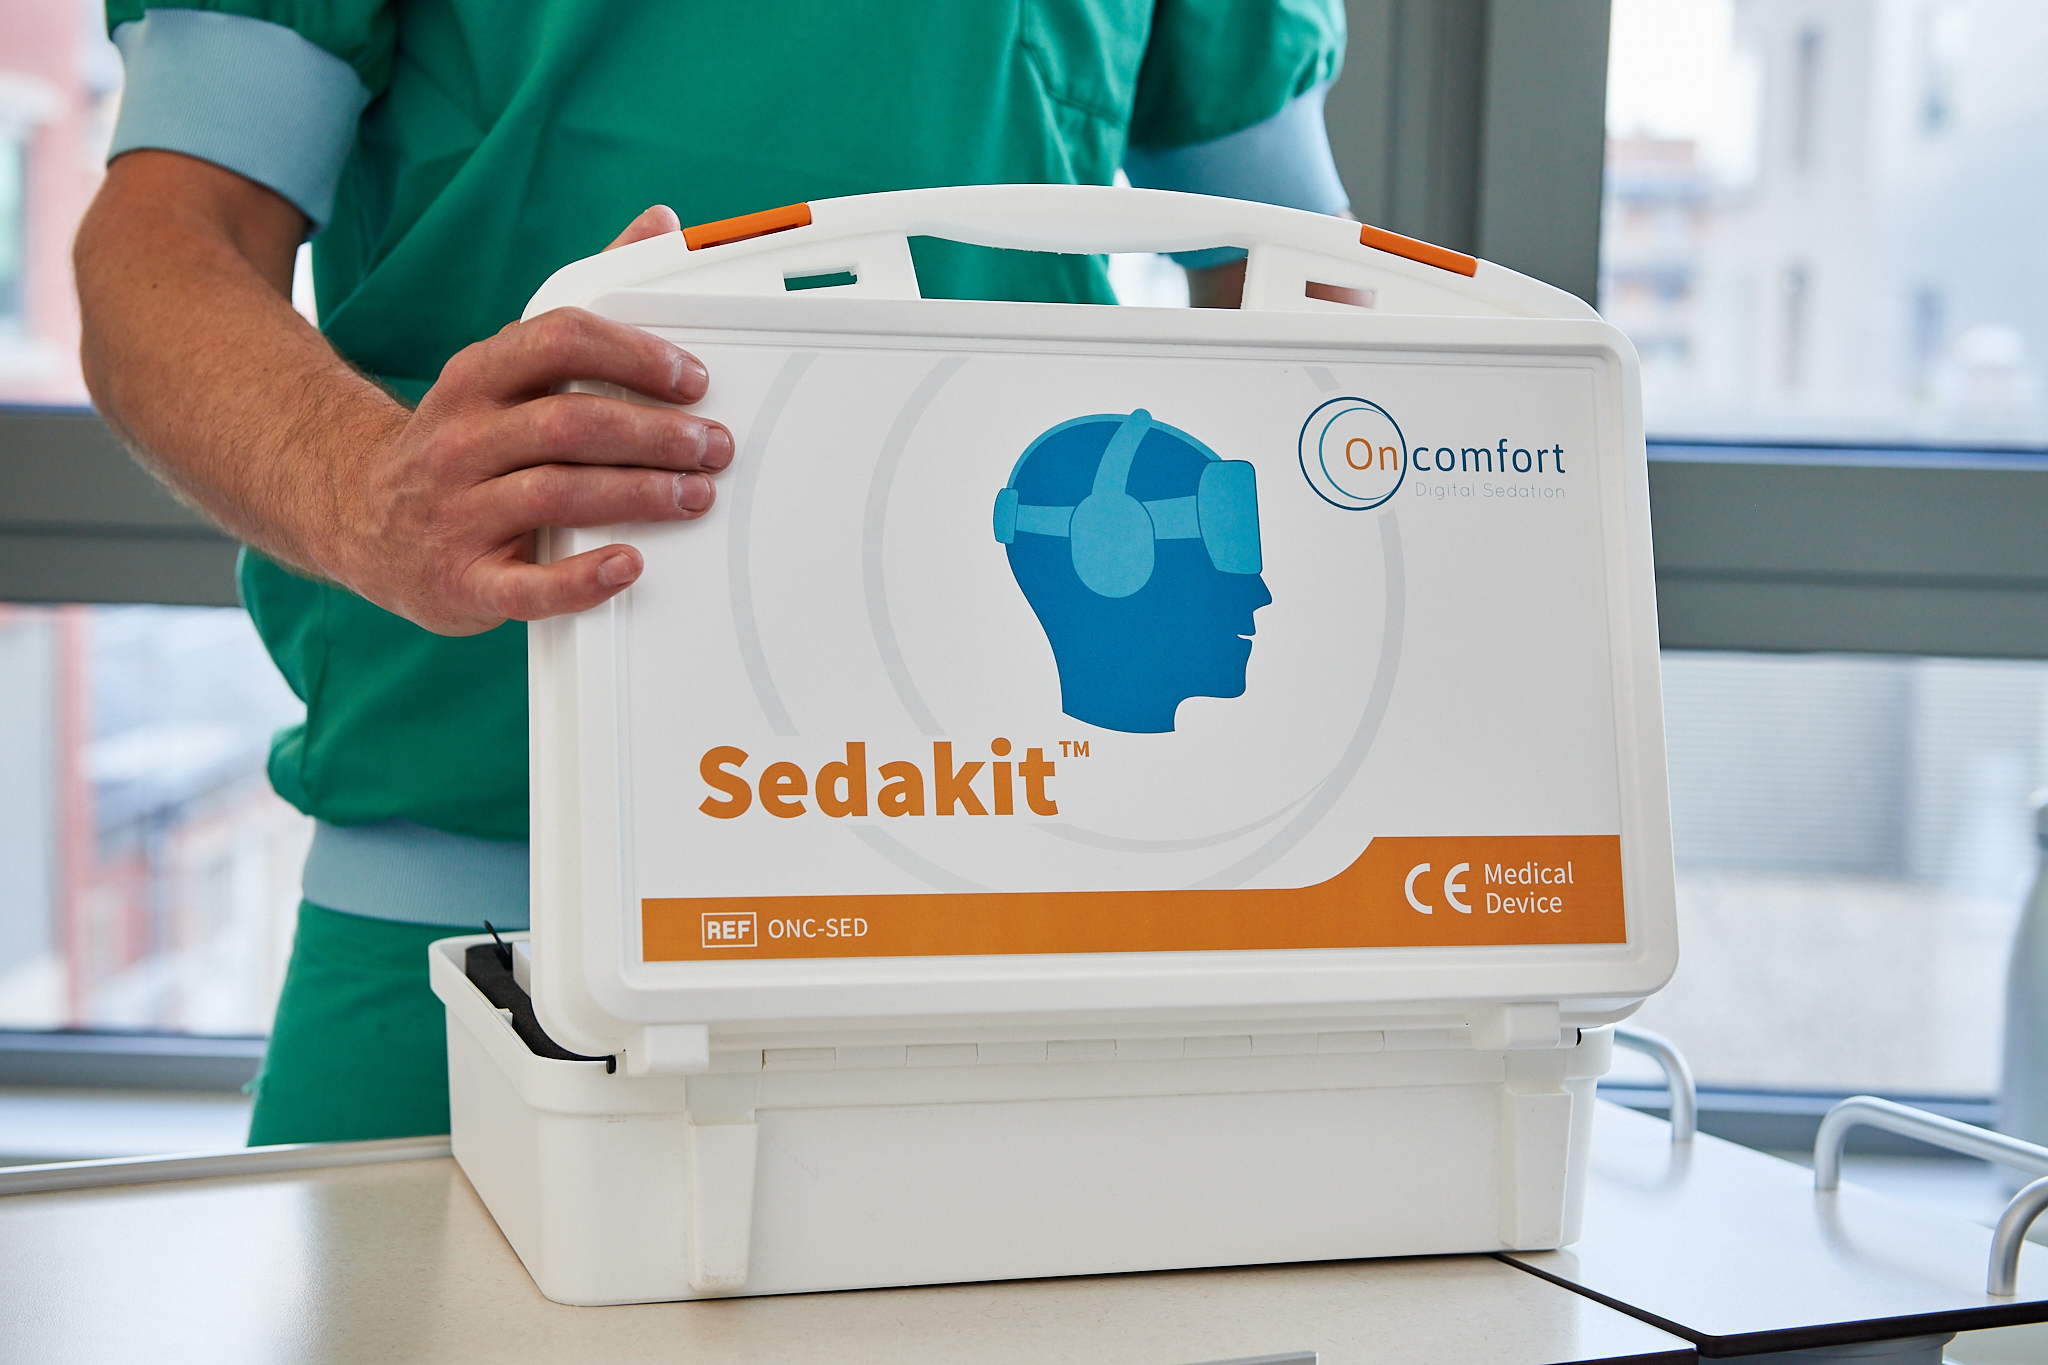 Sedakit case for Digital Sedation